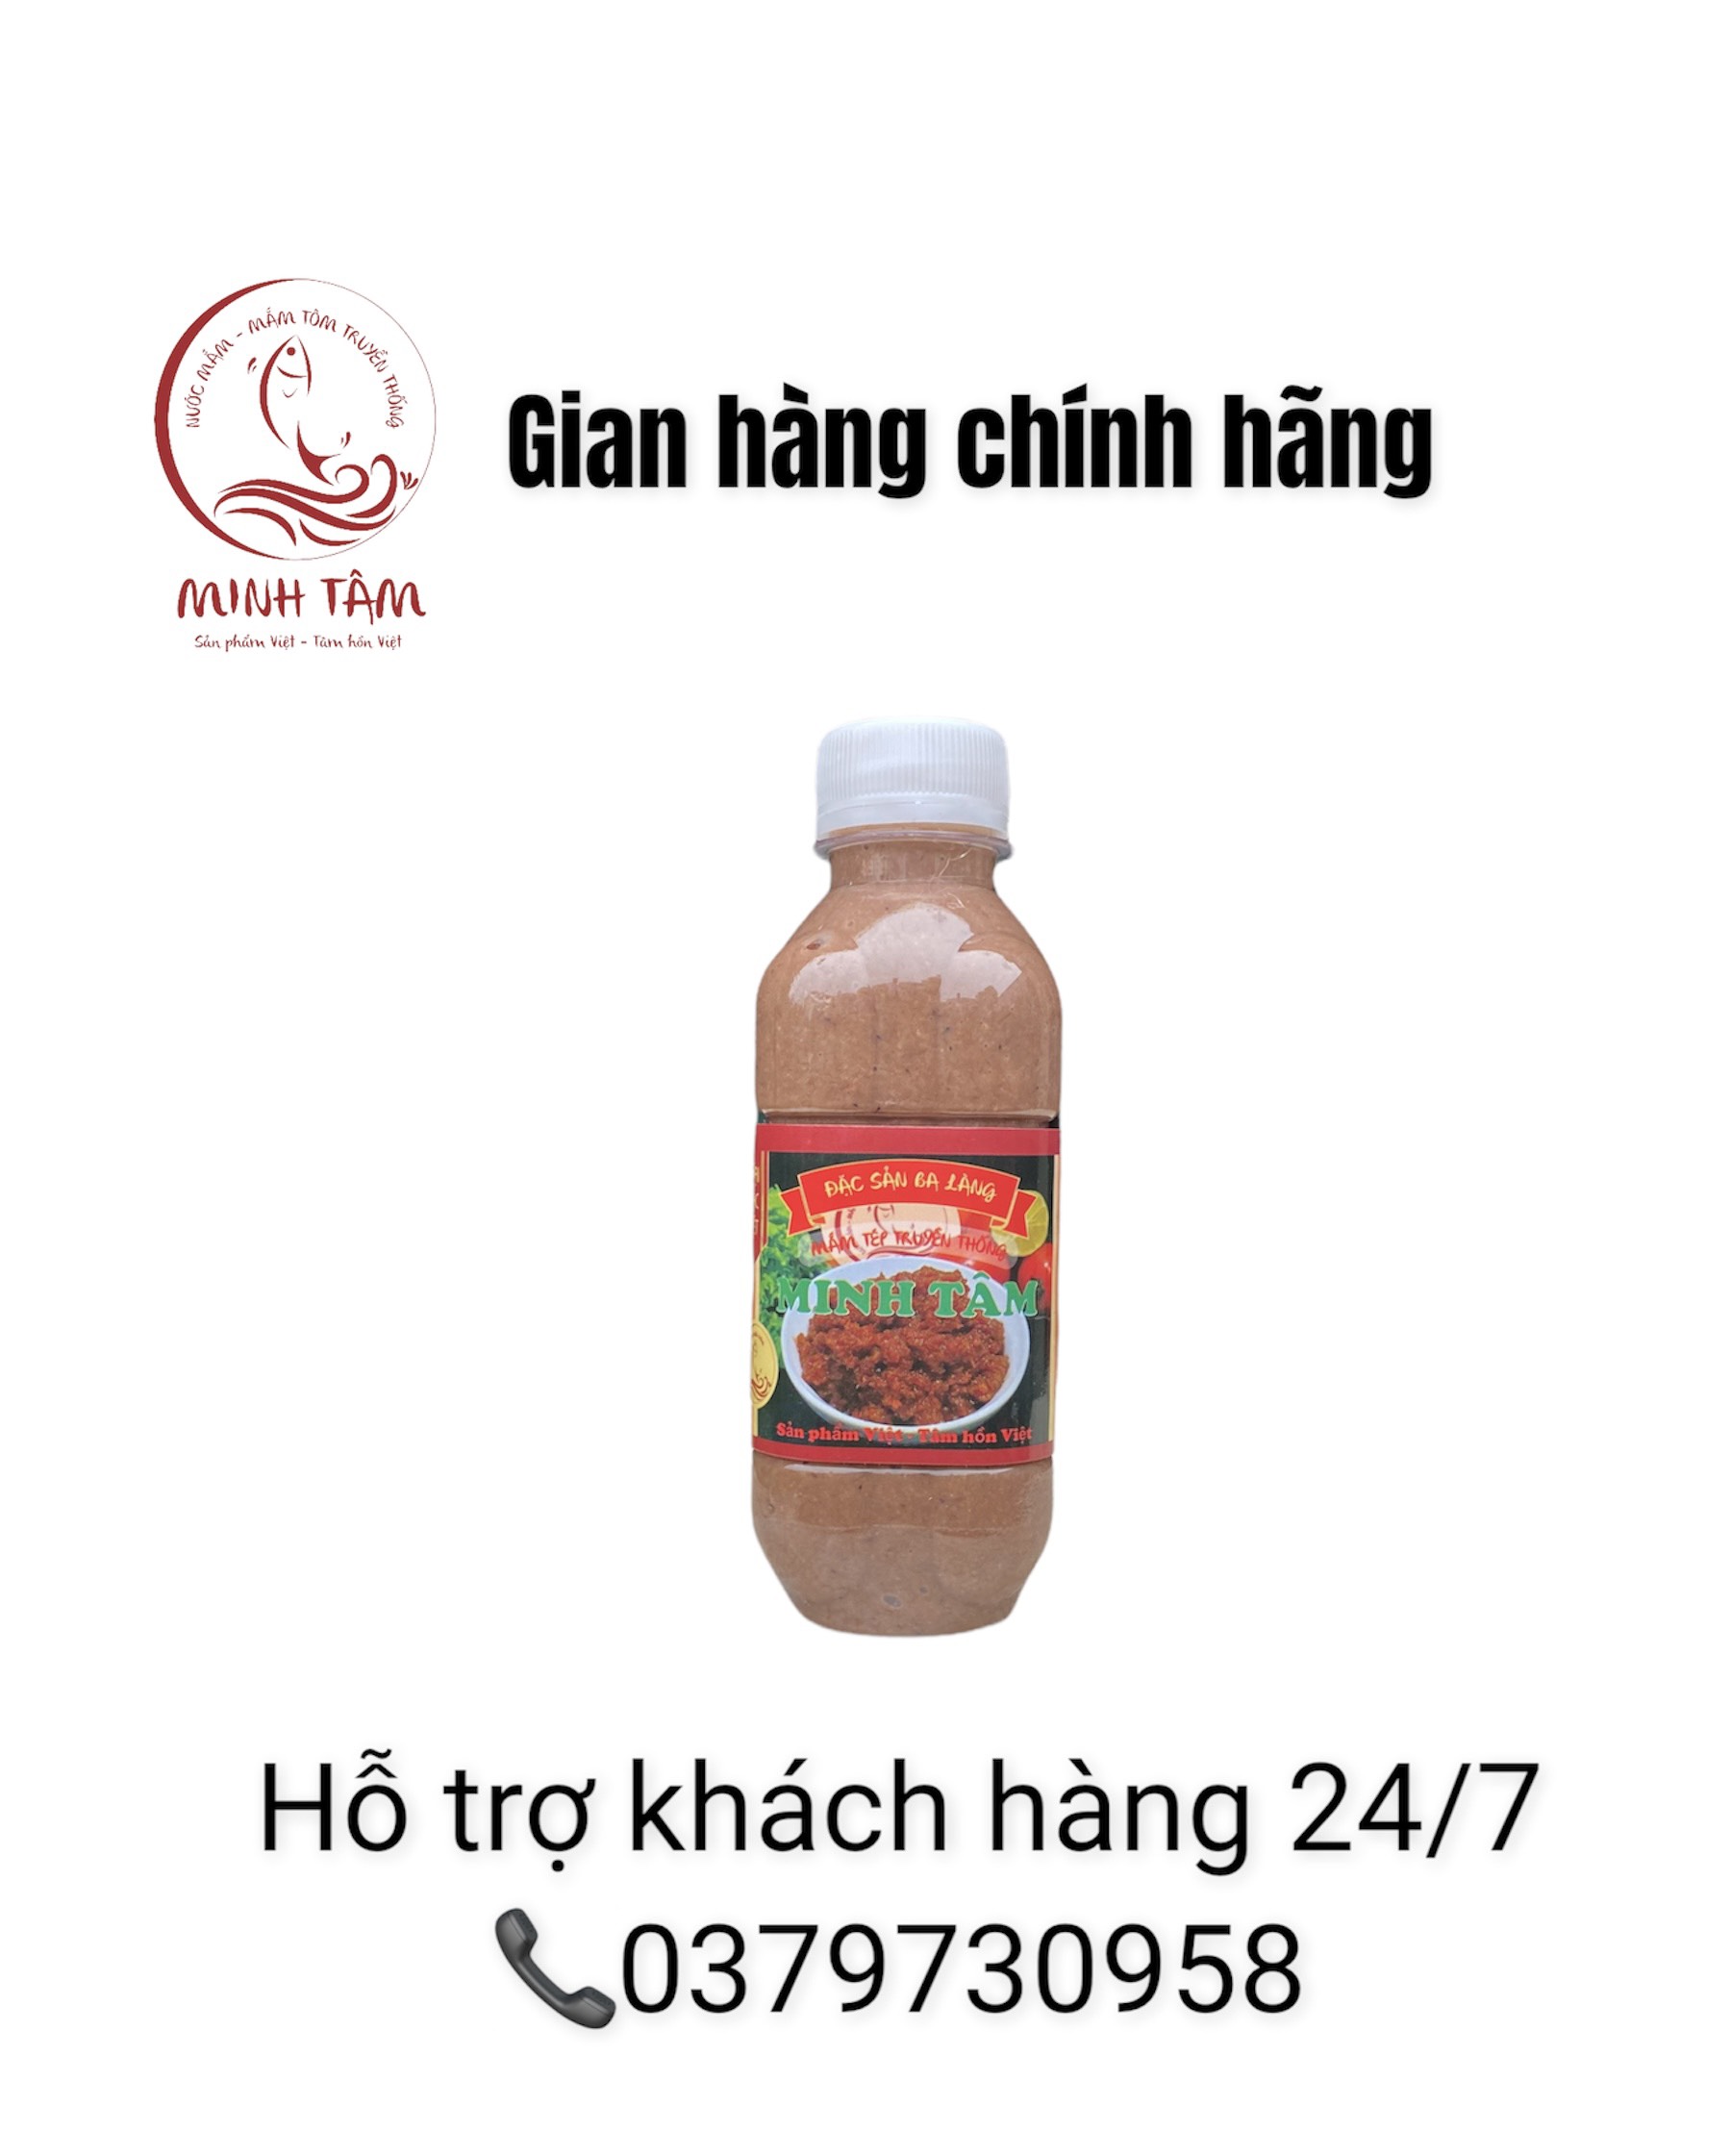 Mắm tép chưng thịt Minh Tâm - đặc sản Ba Làng Thanh Hoá - Loại 1 thumbnail